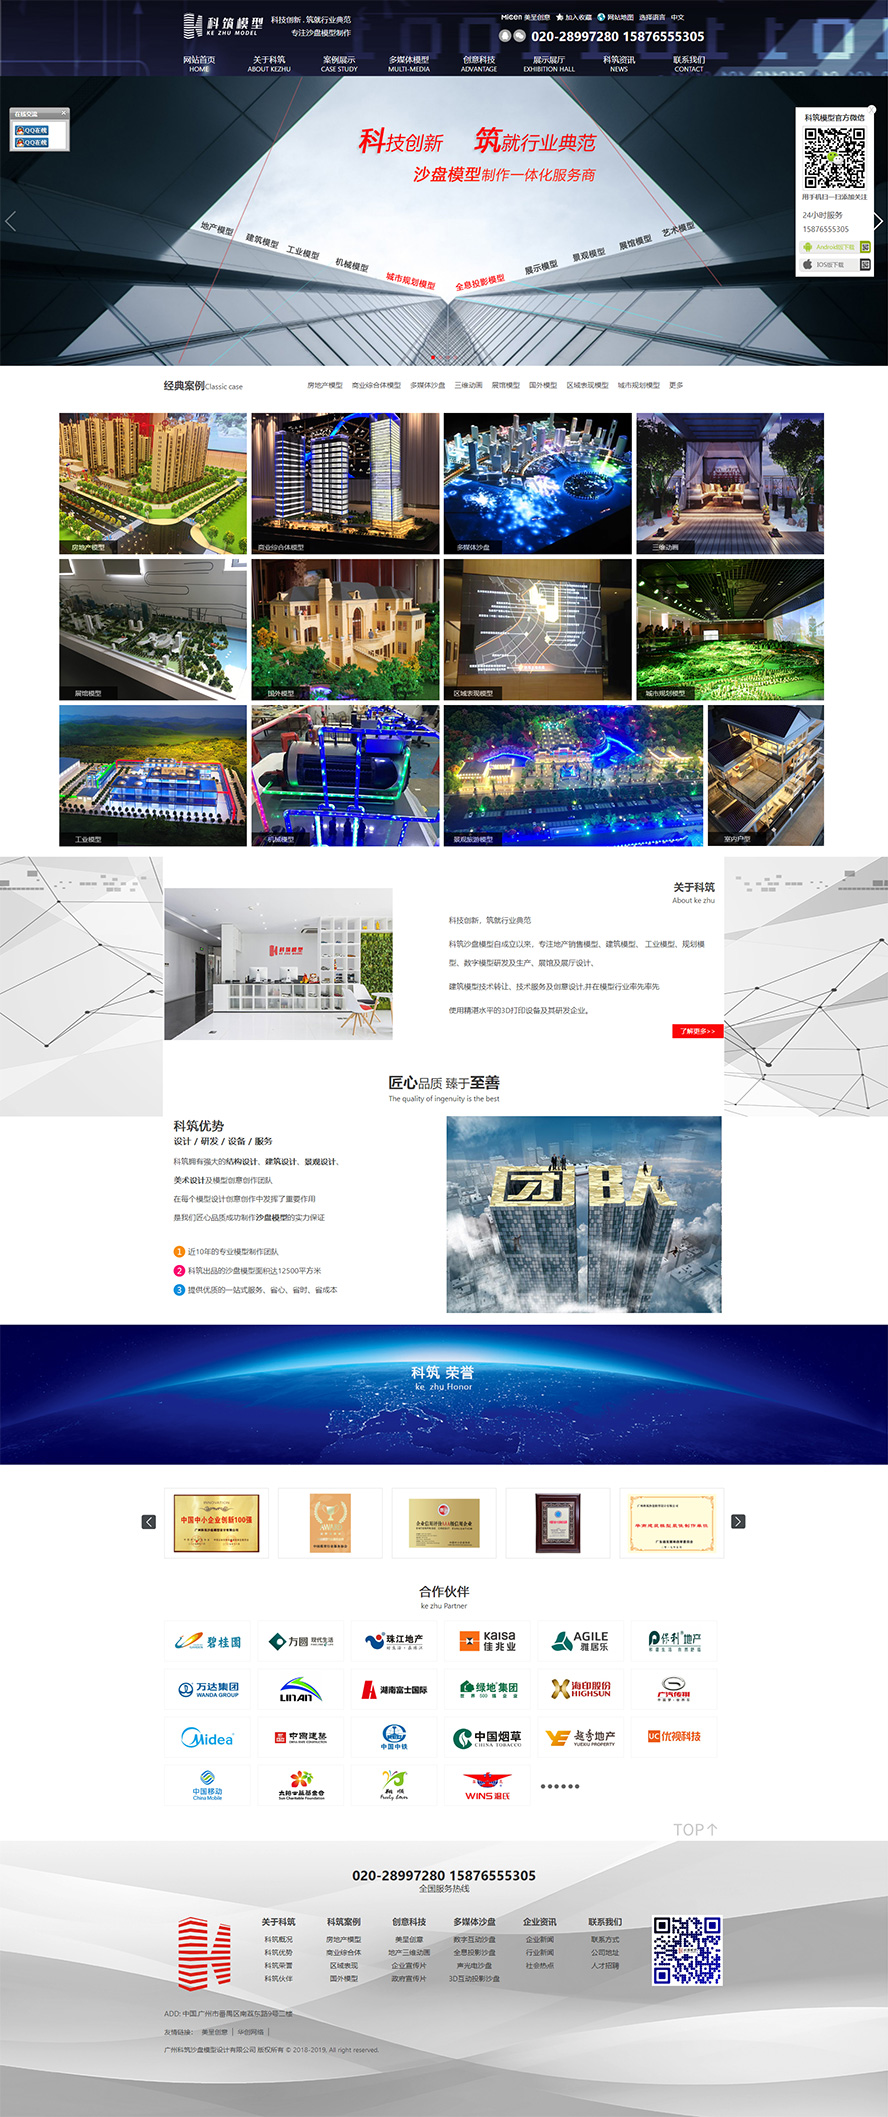 广州科筑沙盘模型设计有限公司